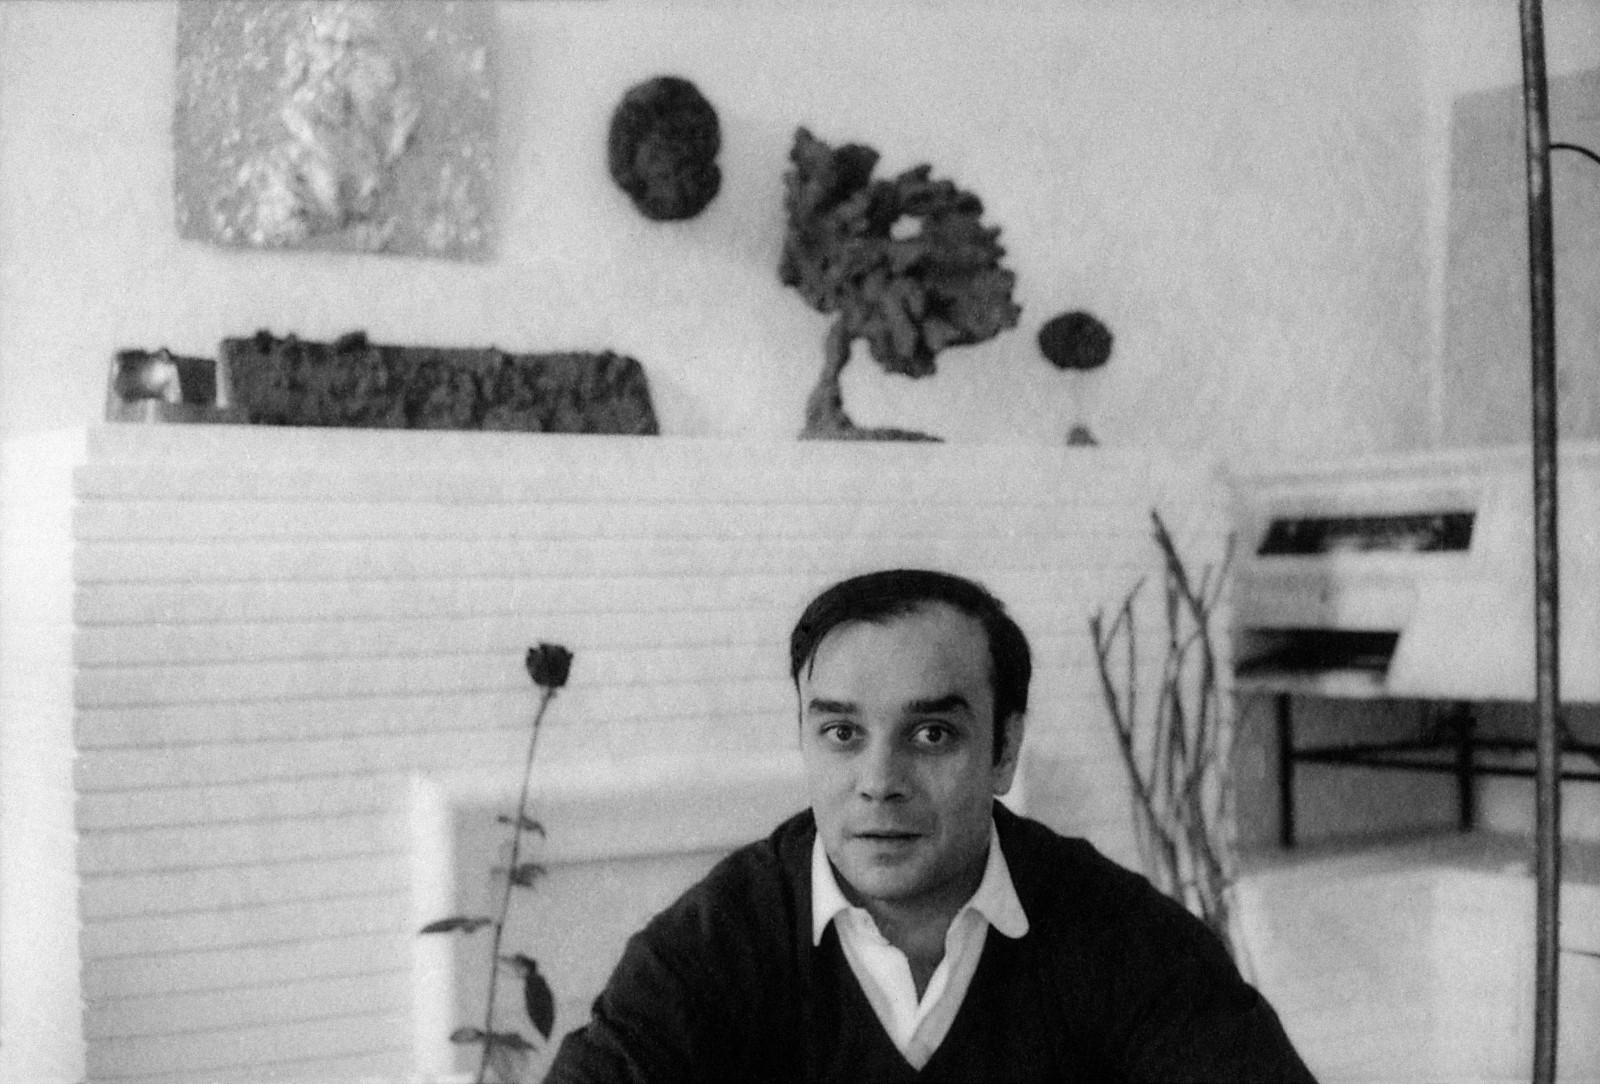 Yves Klein dans son atelier entouré de ses œuvres (MG 5, RE 7, SE 33, SE 72)